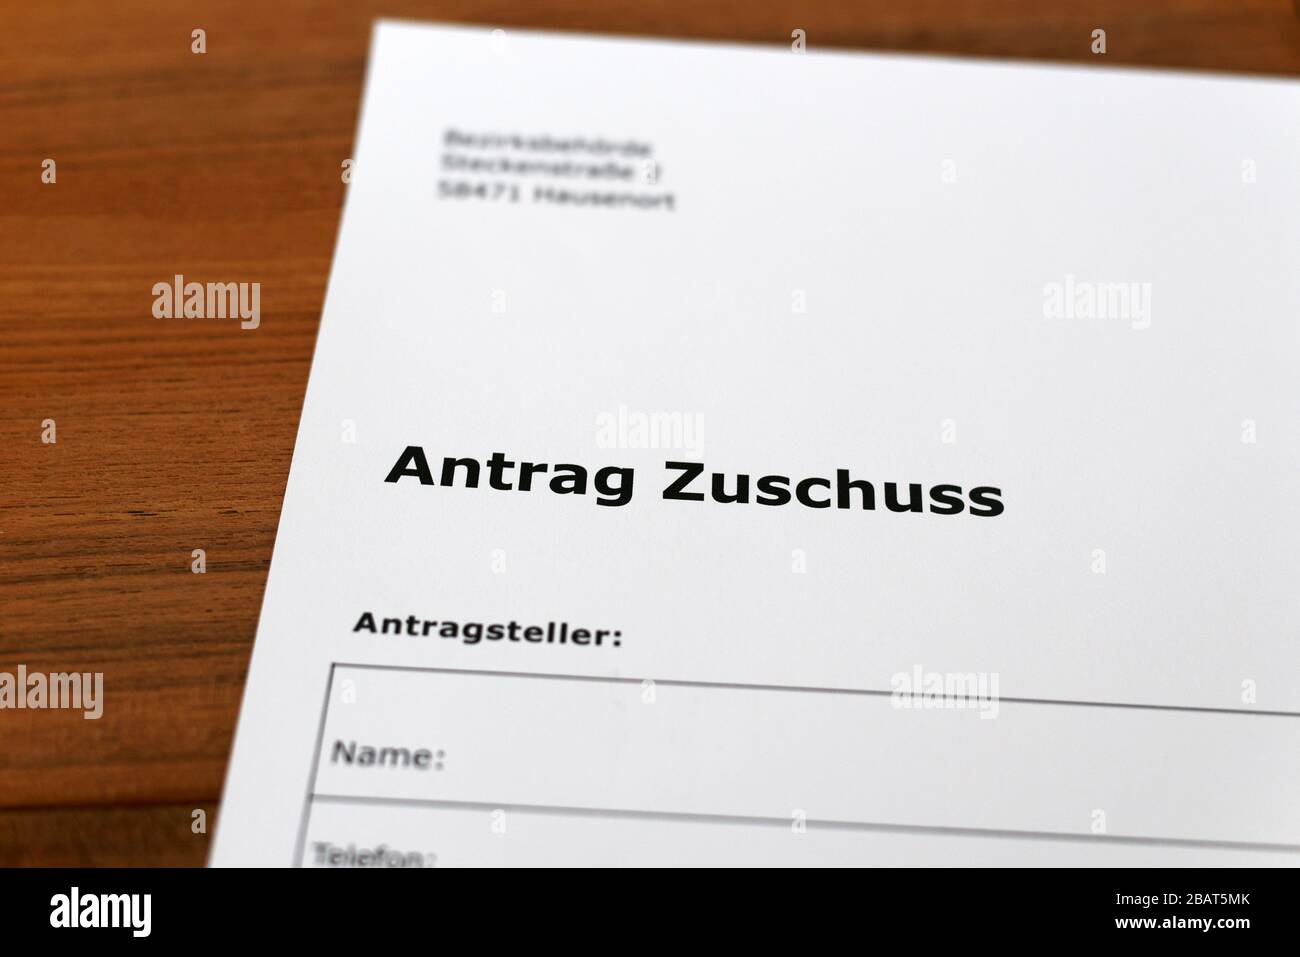 Una hoja de papel con las palabras alemanas 'Antrag Zuschuss' - Traducción en englisch: Solicitud de subvención. Foto de stock